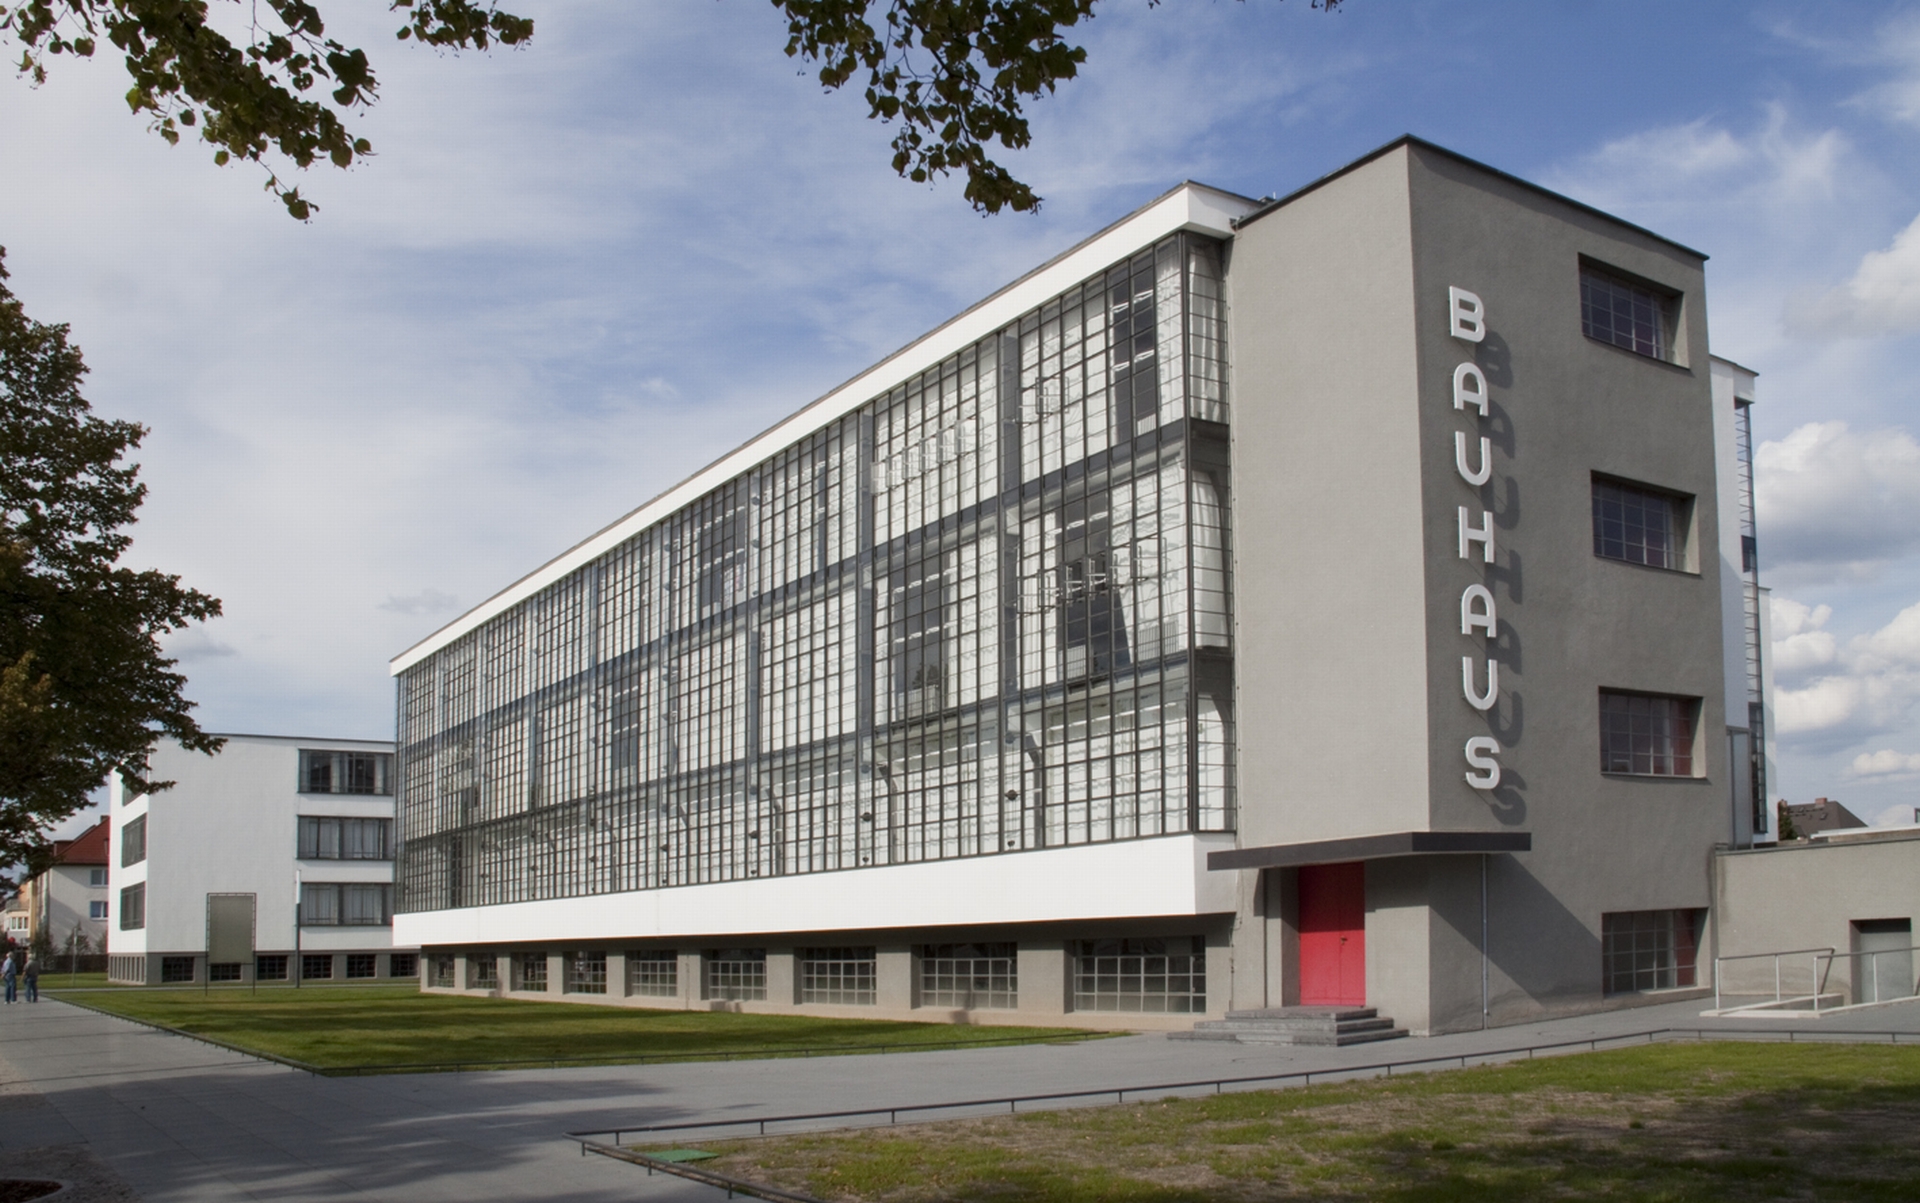 Bauhaus Image 2 